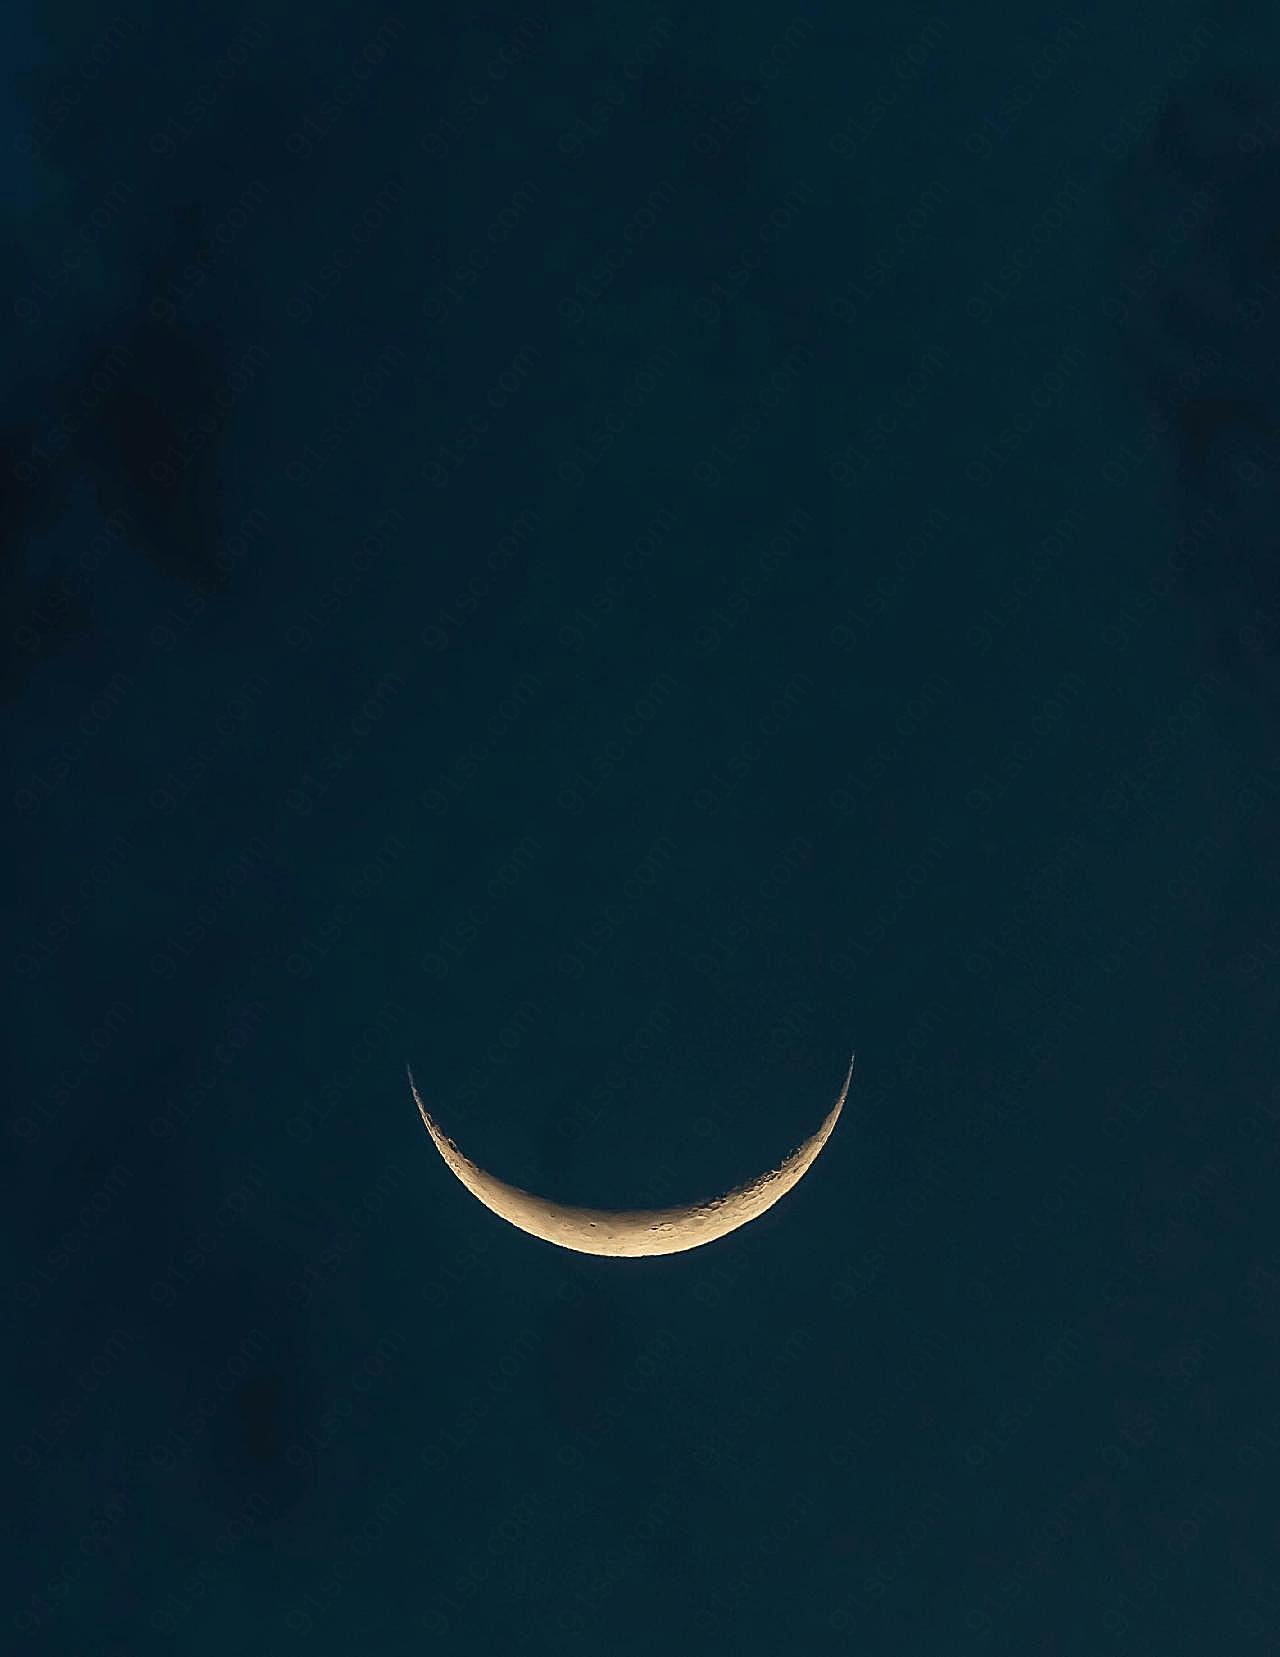 下弦月夜空图片景观自然